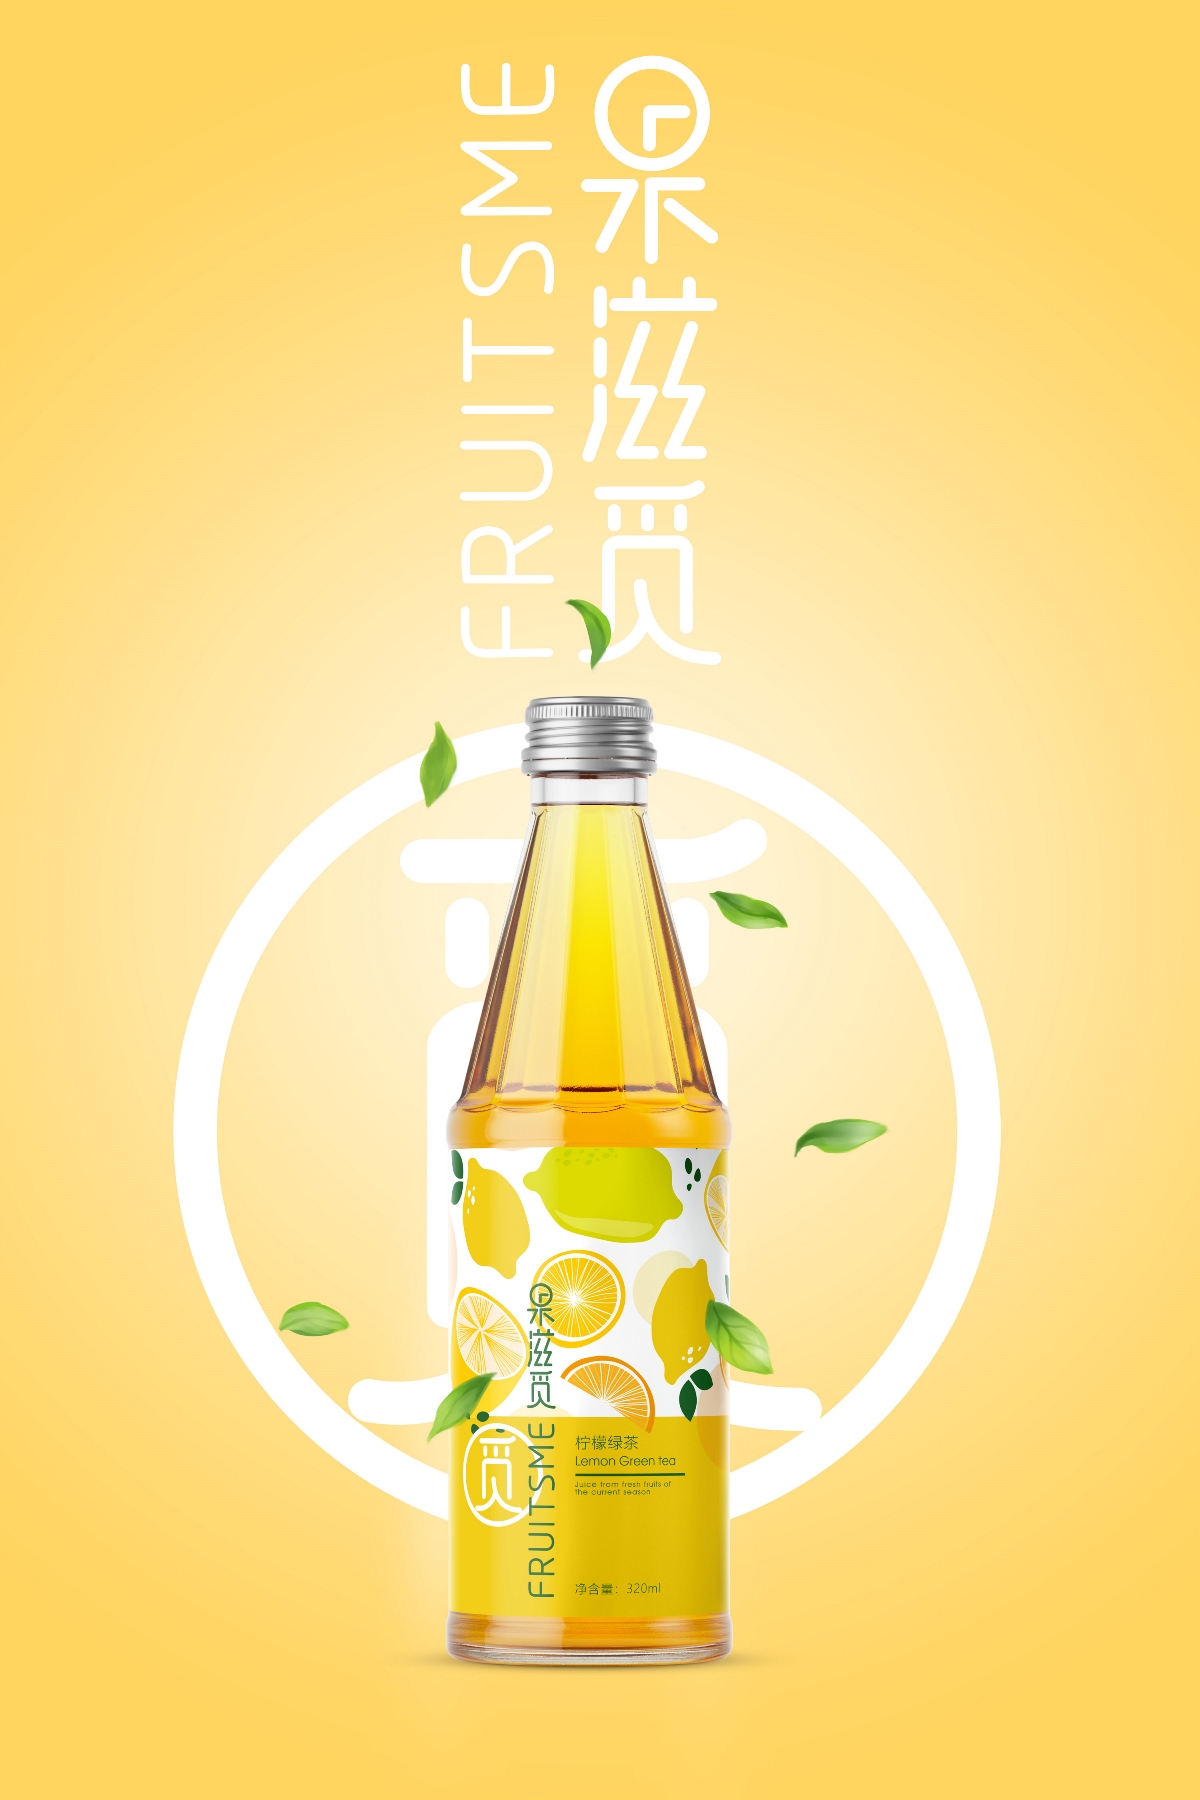 饮料包装设计 柠檬绿茶 香橙绿茶 ©刘益铭 原创作品